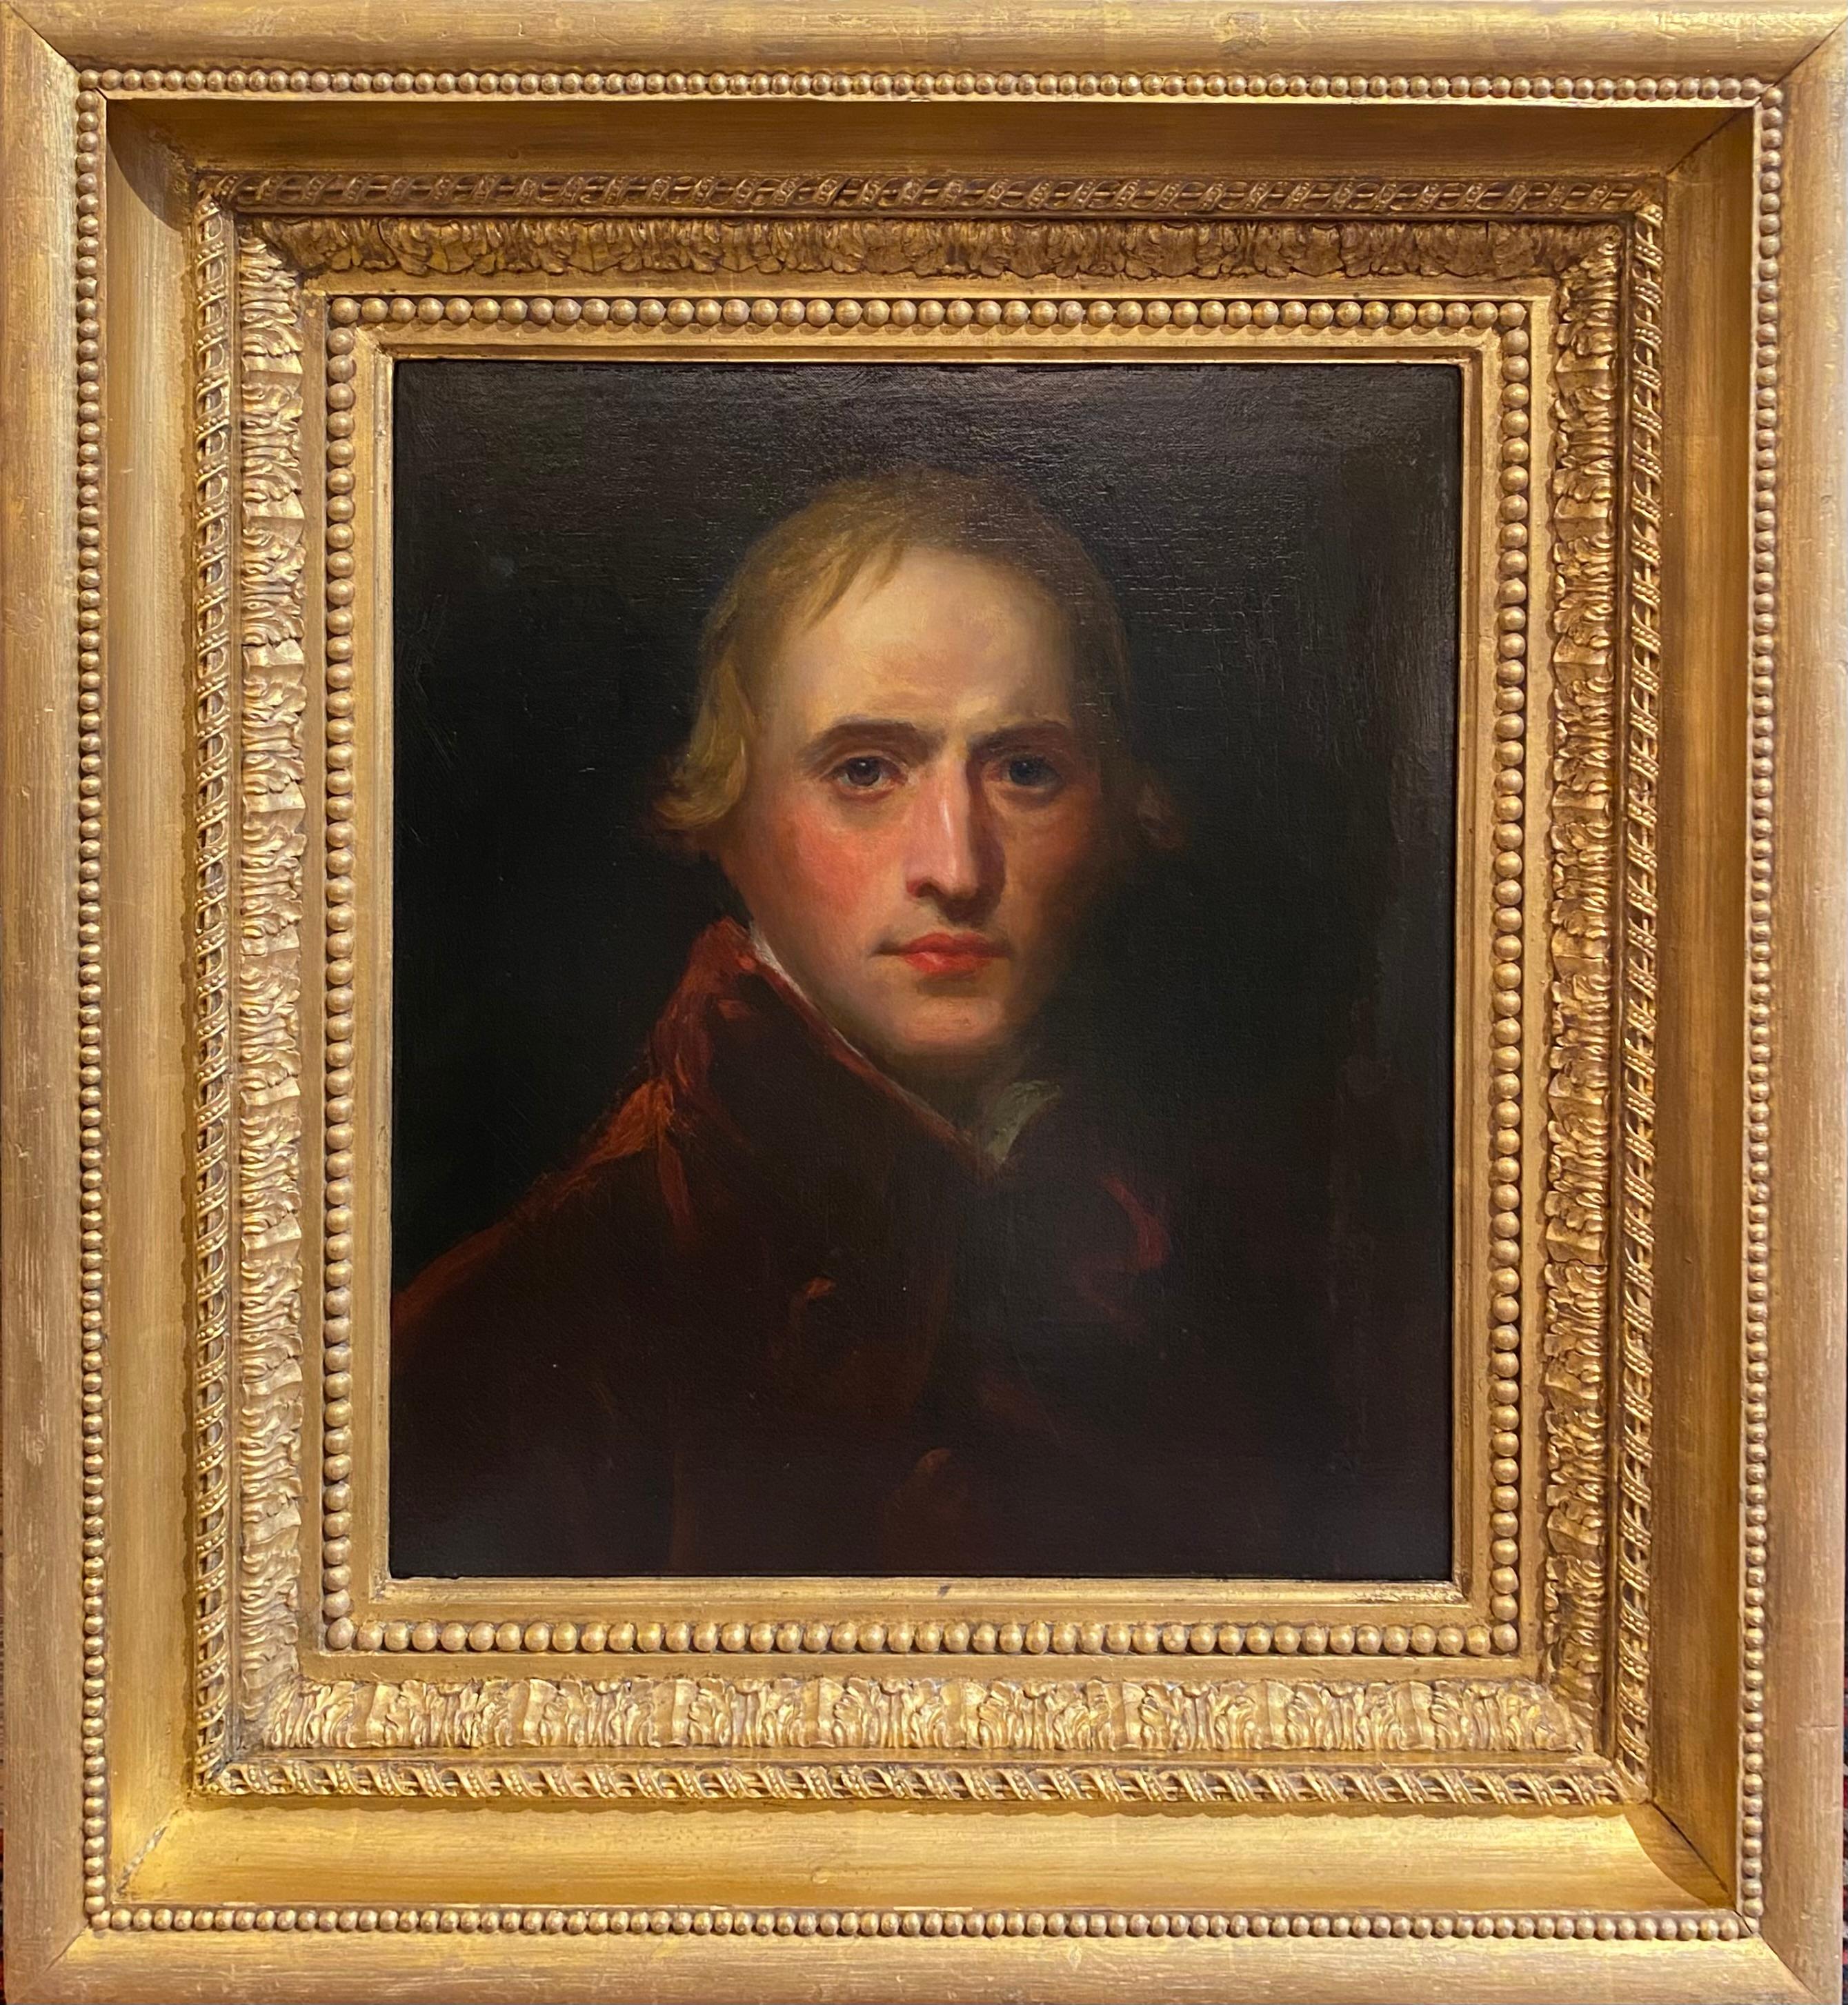 Sir John Hoppner Portrait Painting - Portrait of John Hoppner